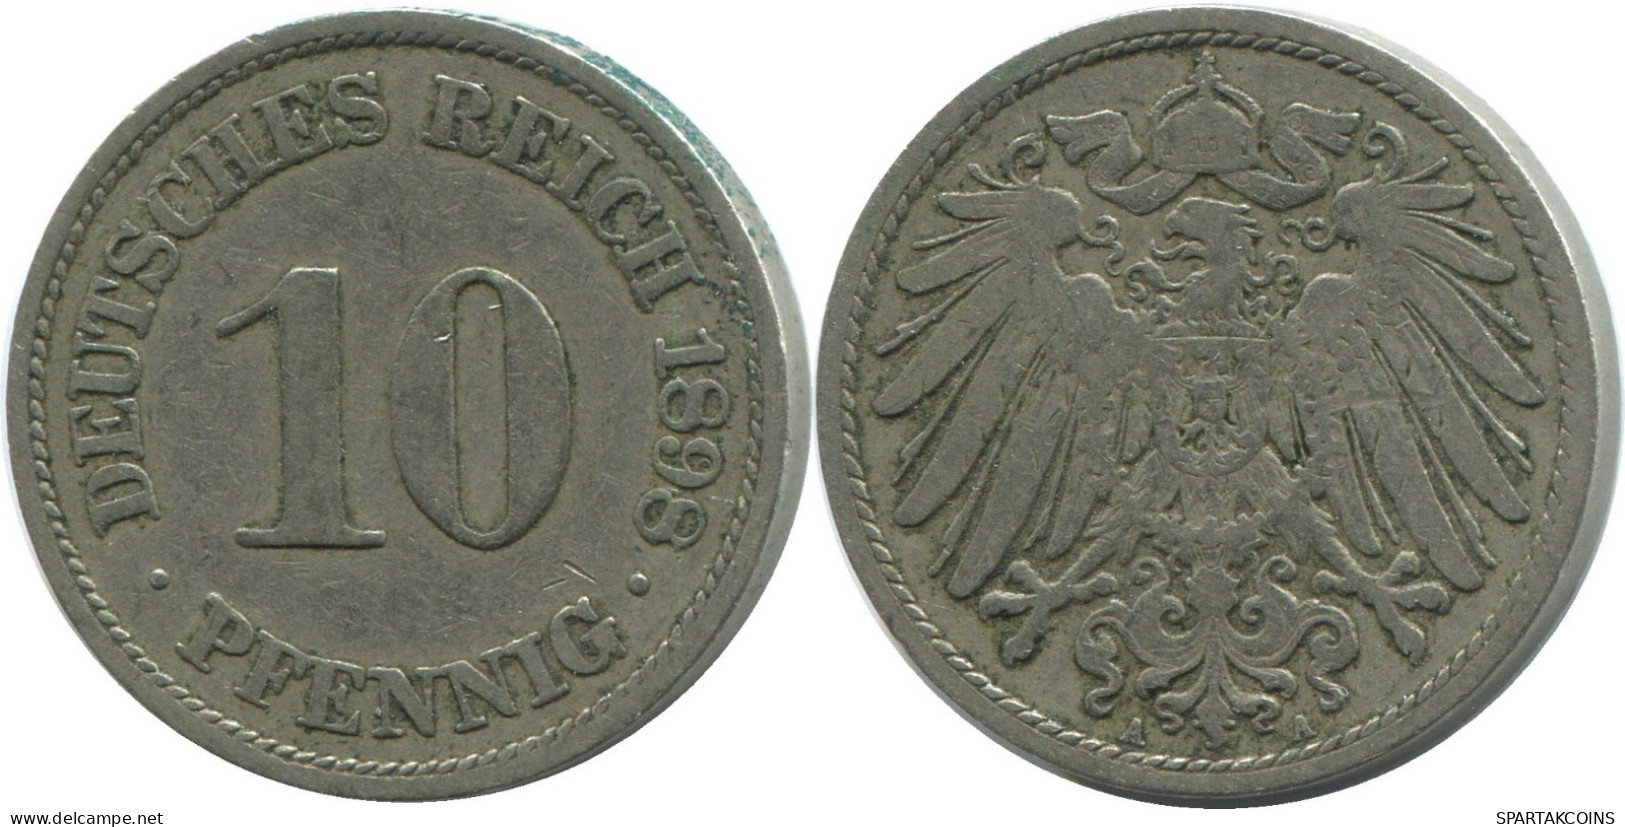 10 PFENNIG 1898 A DEUTSCHLAND Münze GERMANY #DE10454.5.D.A - 10 Pfennig